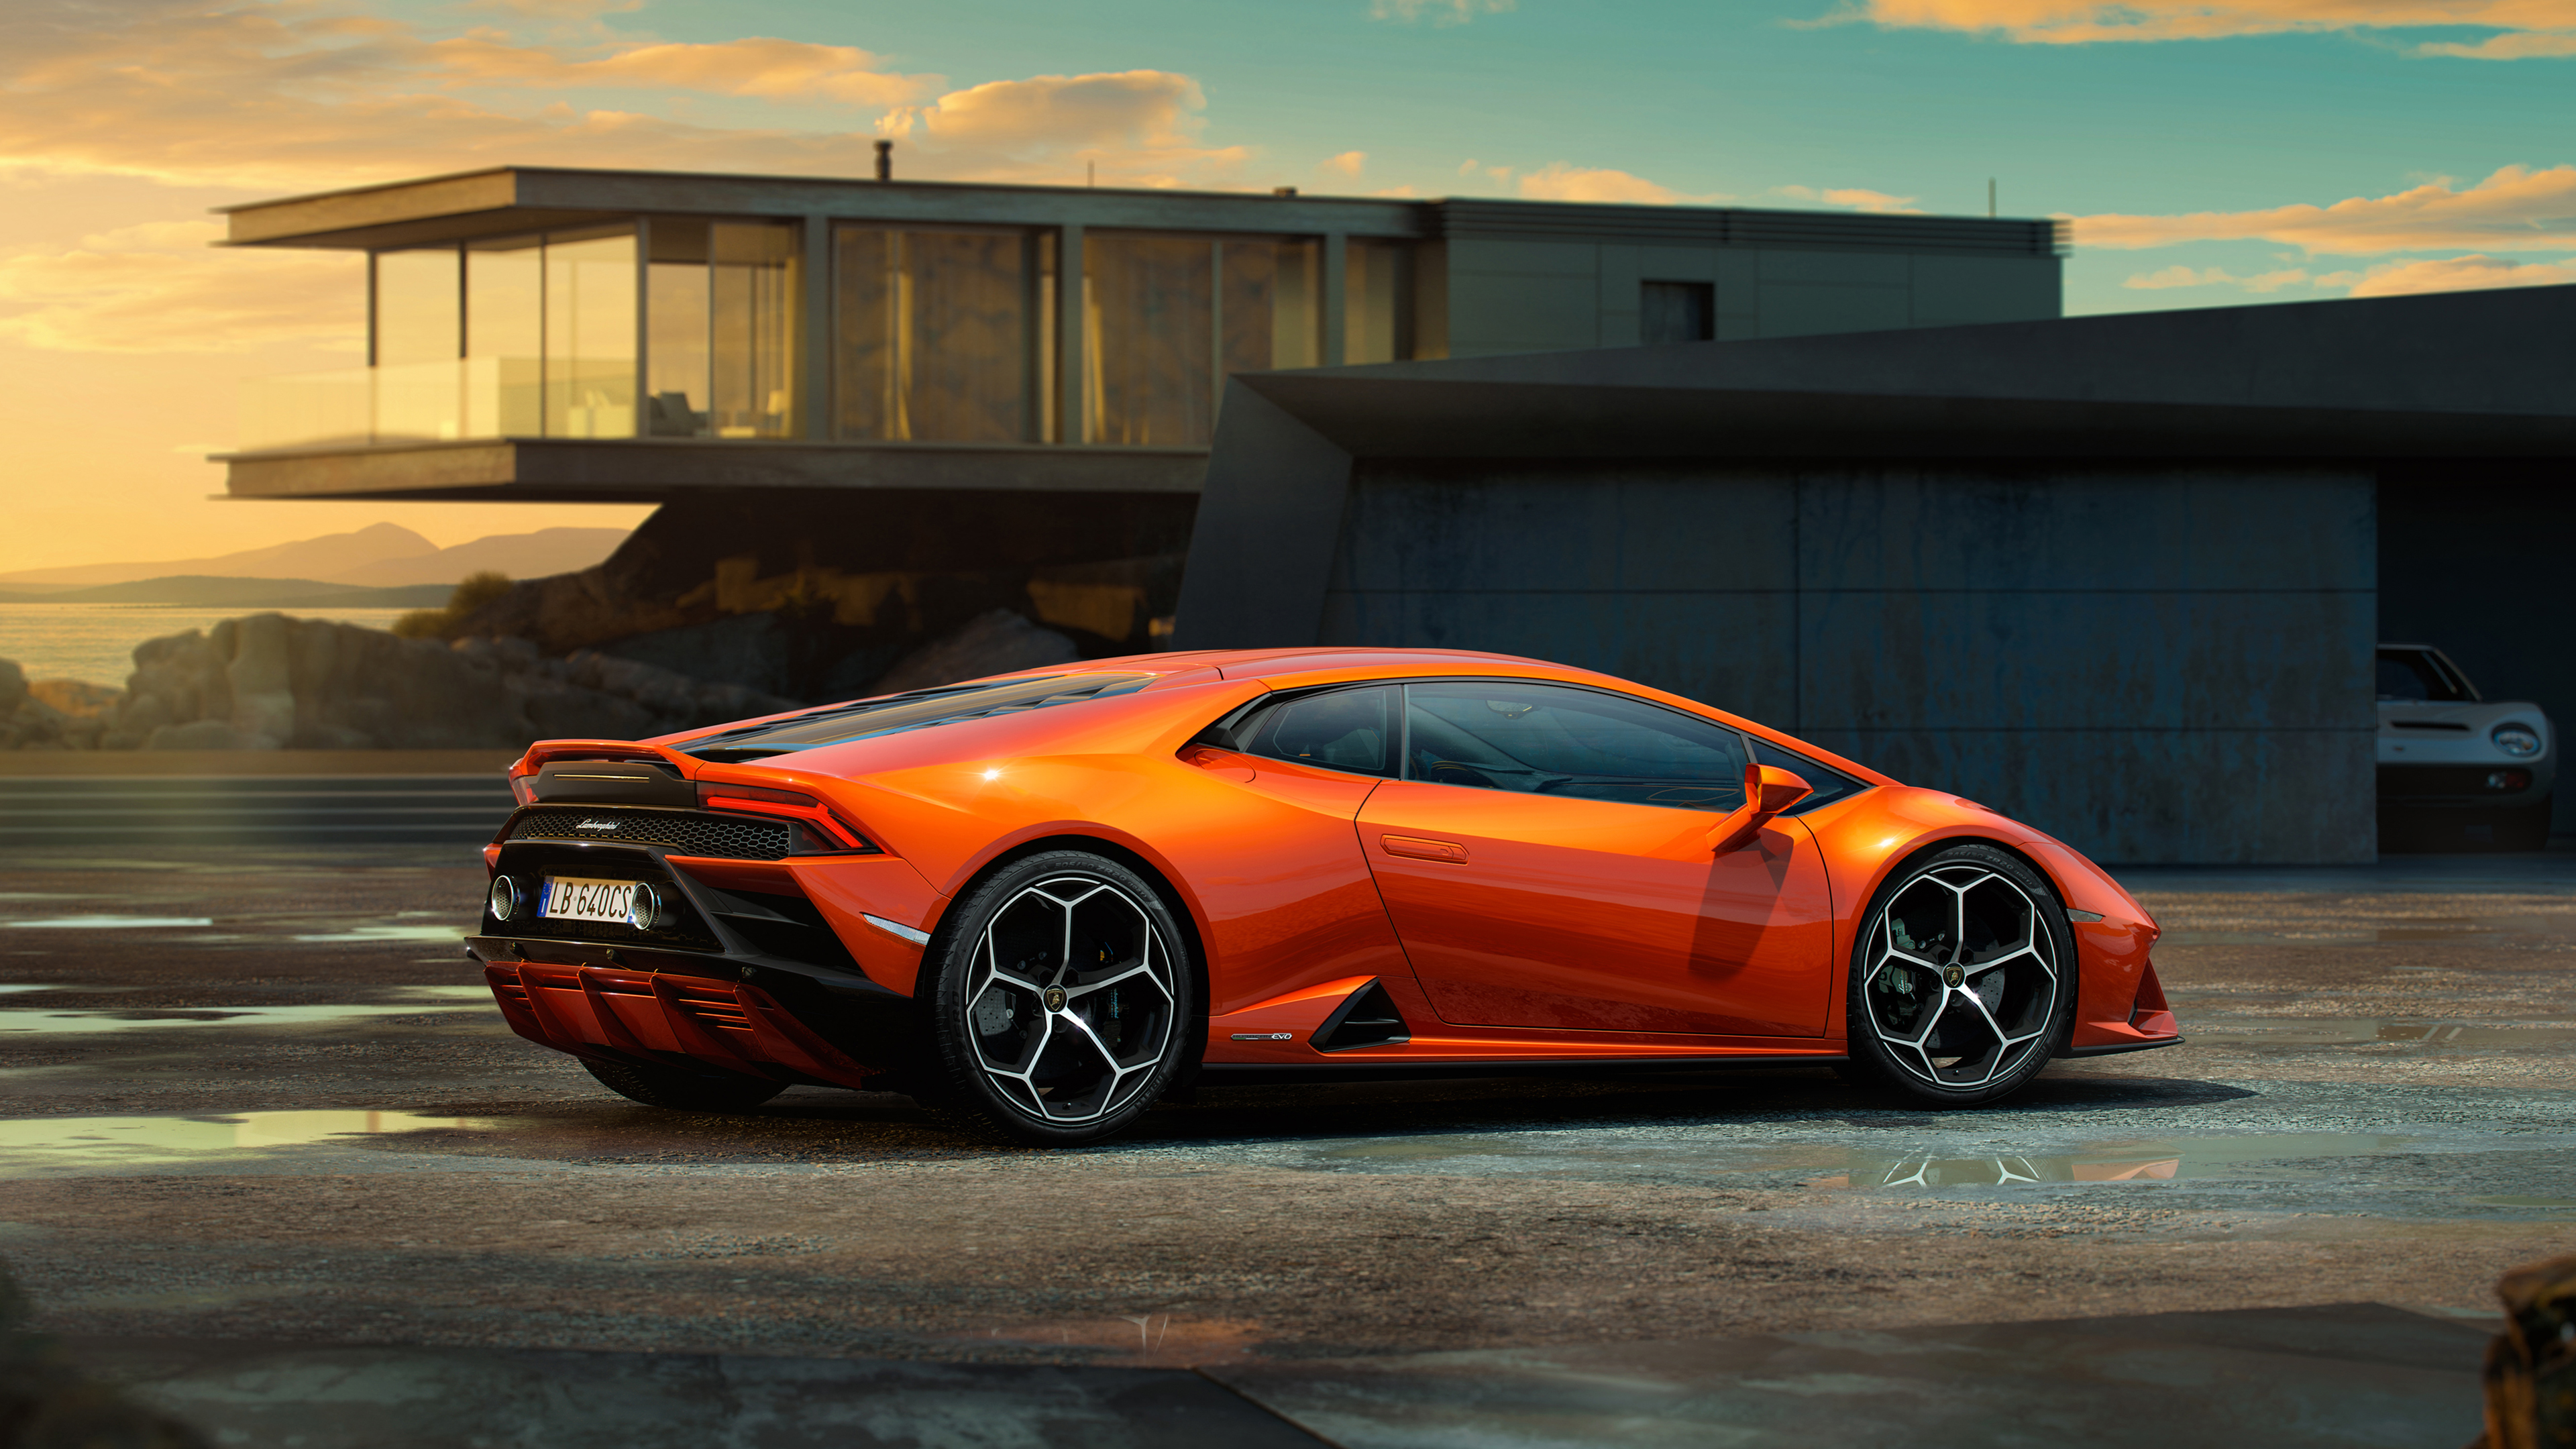 Lamborghini Huracan EVO 2019 4K 3 Wallpaper | HD Car ...